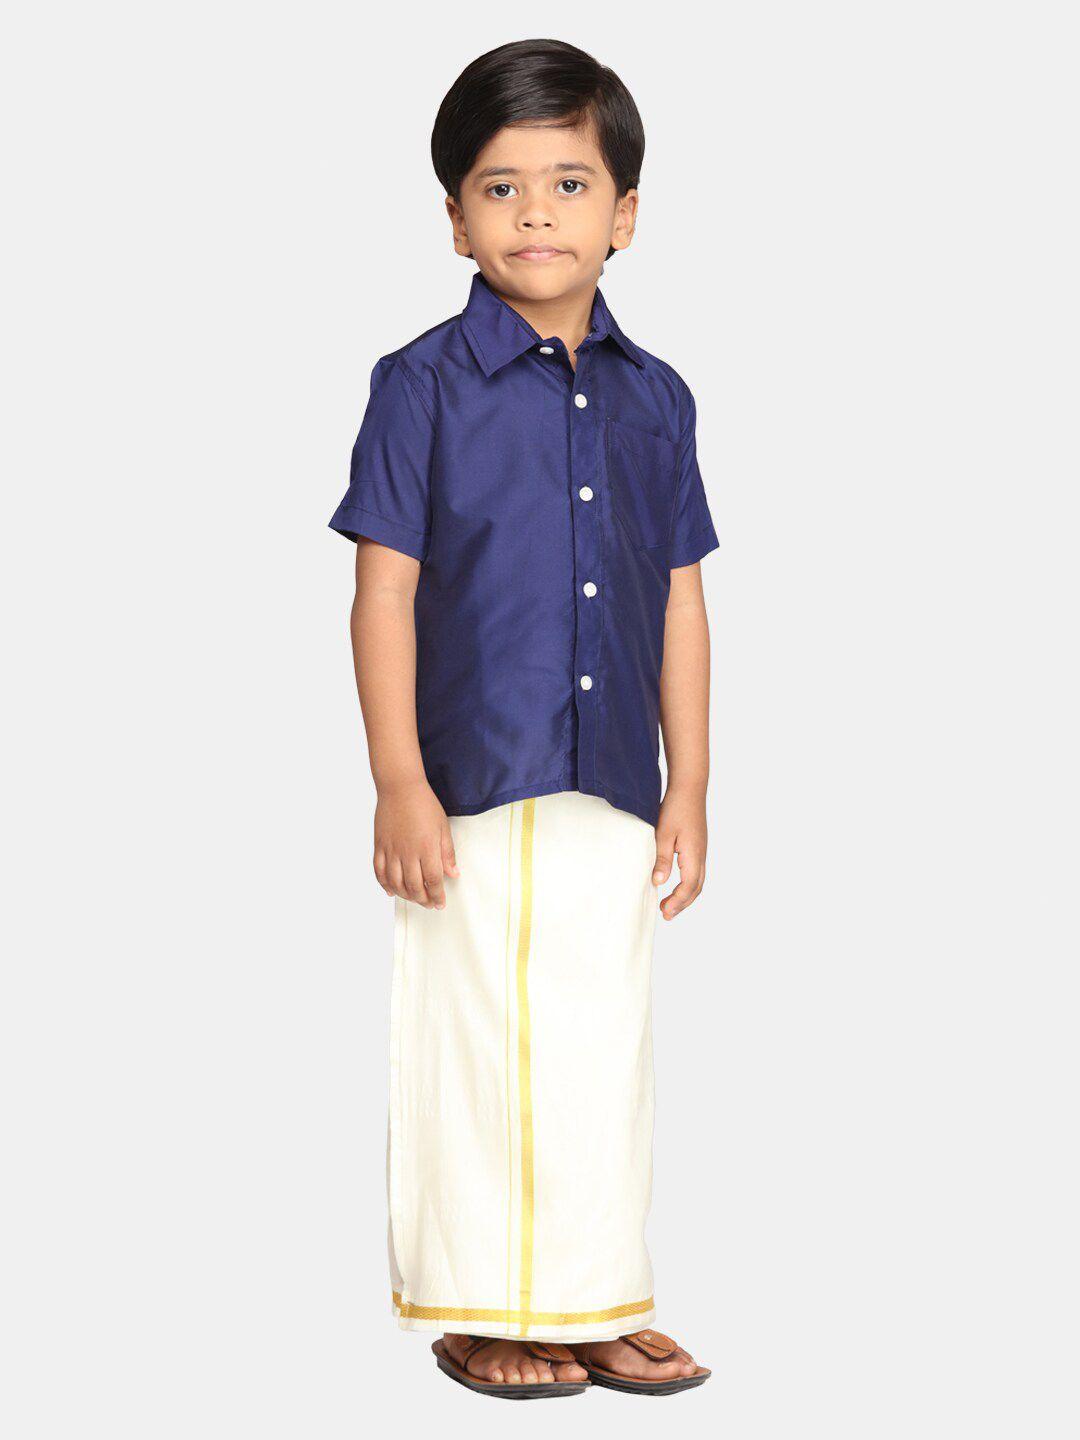 sethukrishna-boys-clothing-set